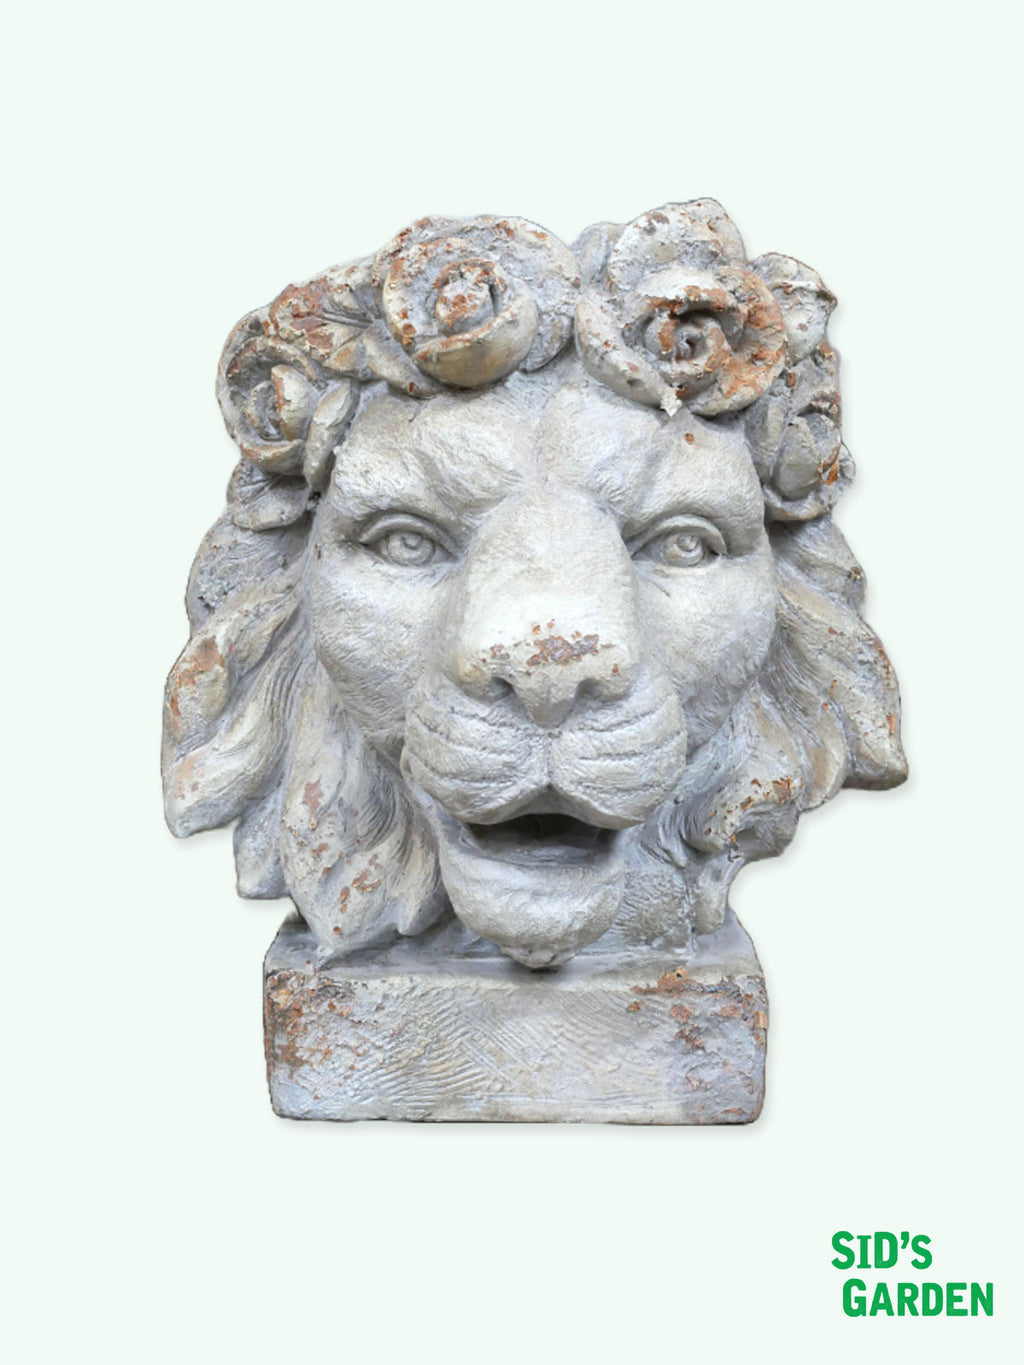 Lion Head Rustic Planter - 44cm